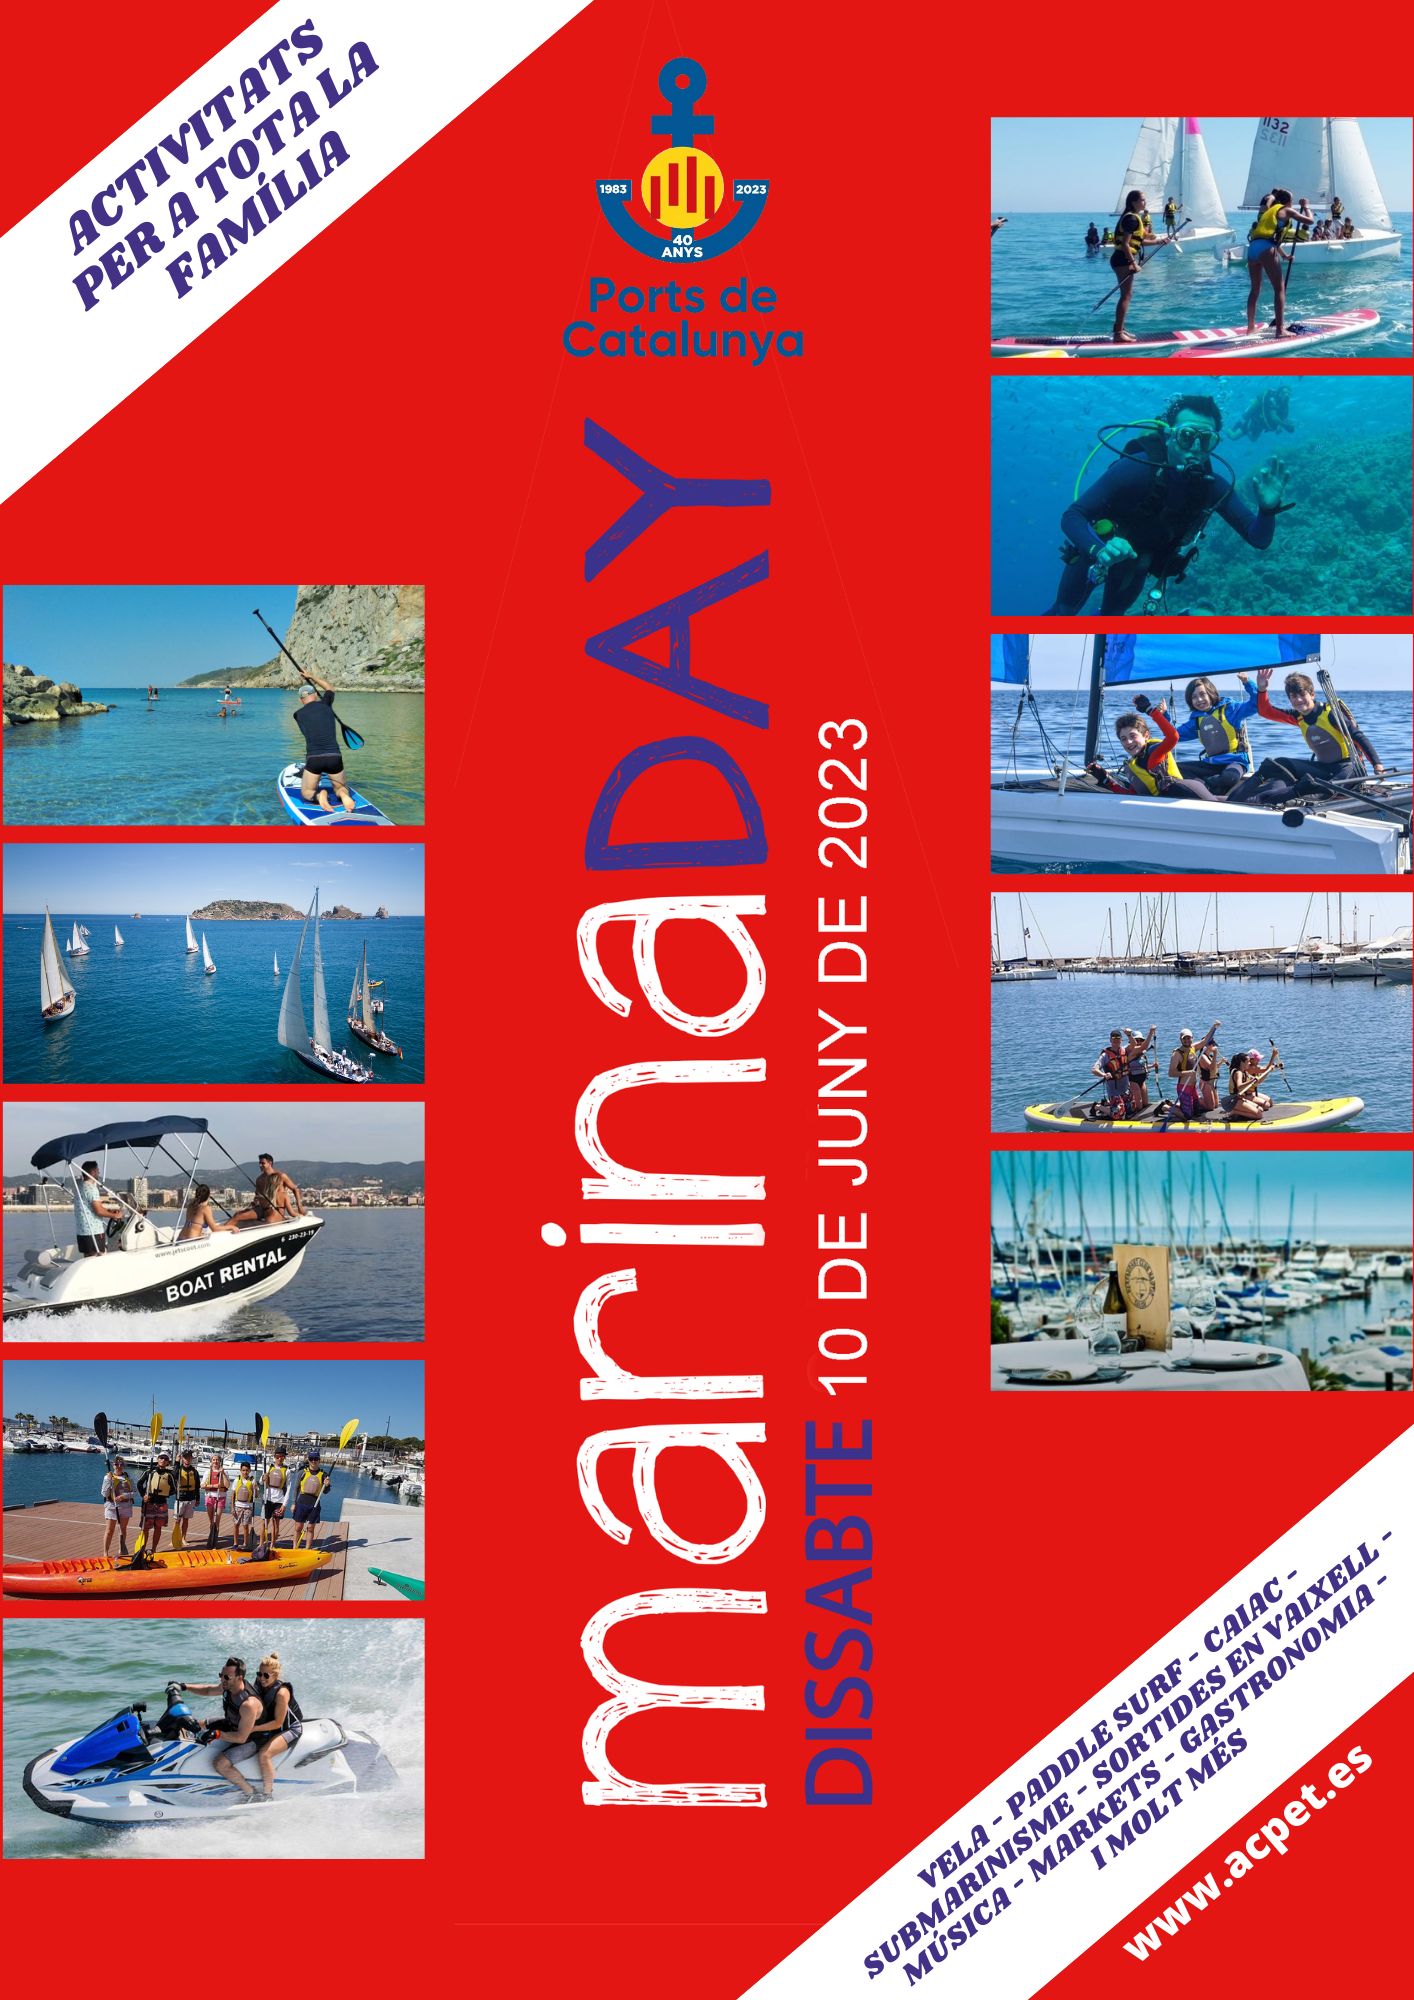 Dissabte dia 10 torna el Marina Day, la jornada més festiva del Port de Sitges